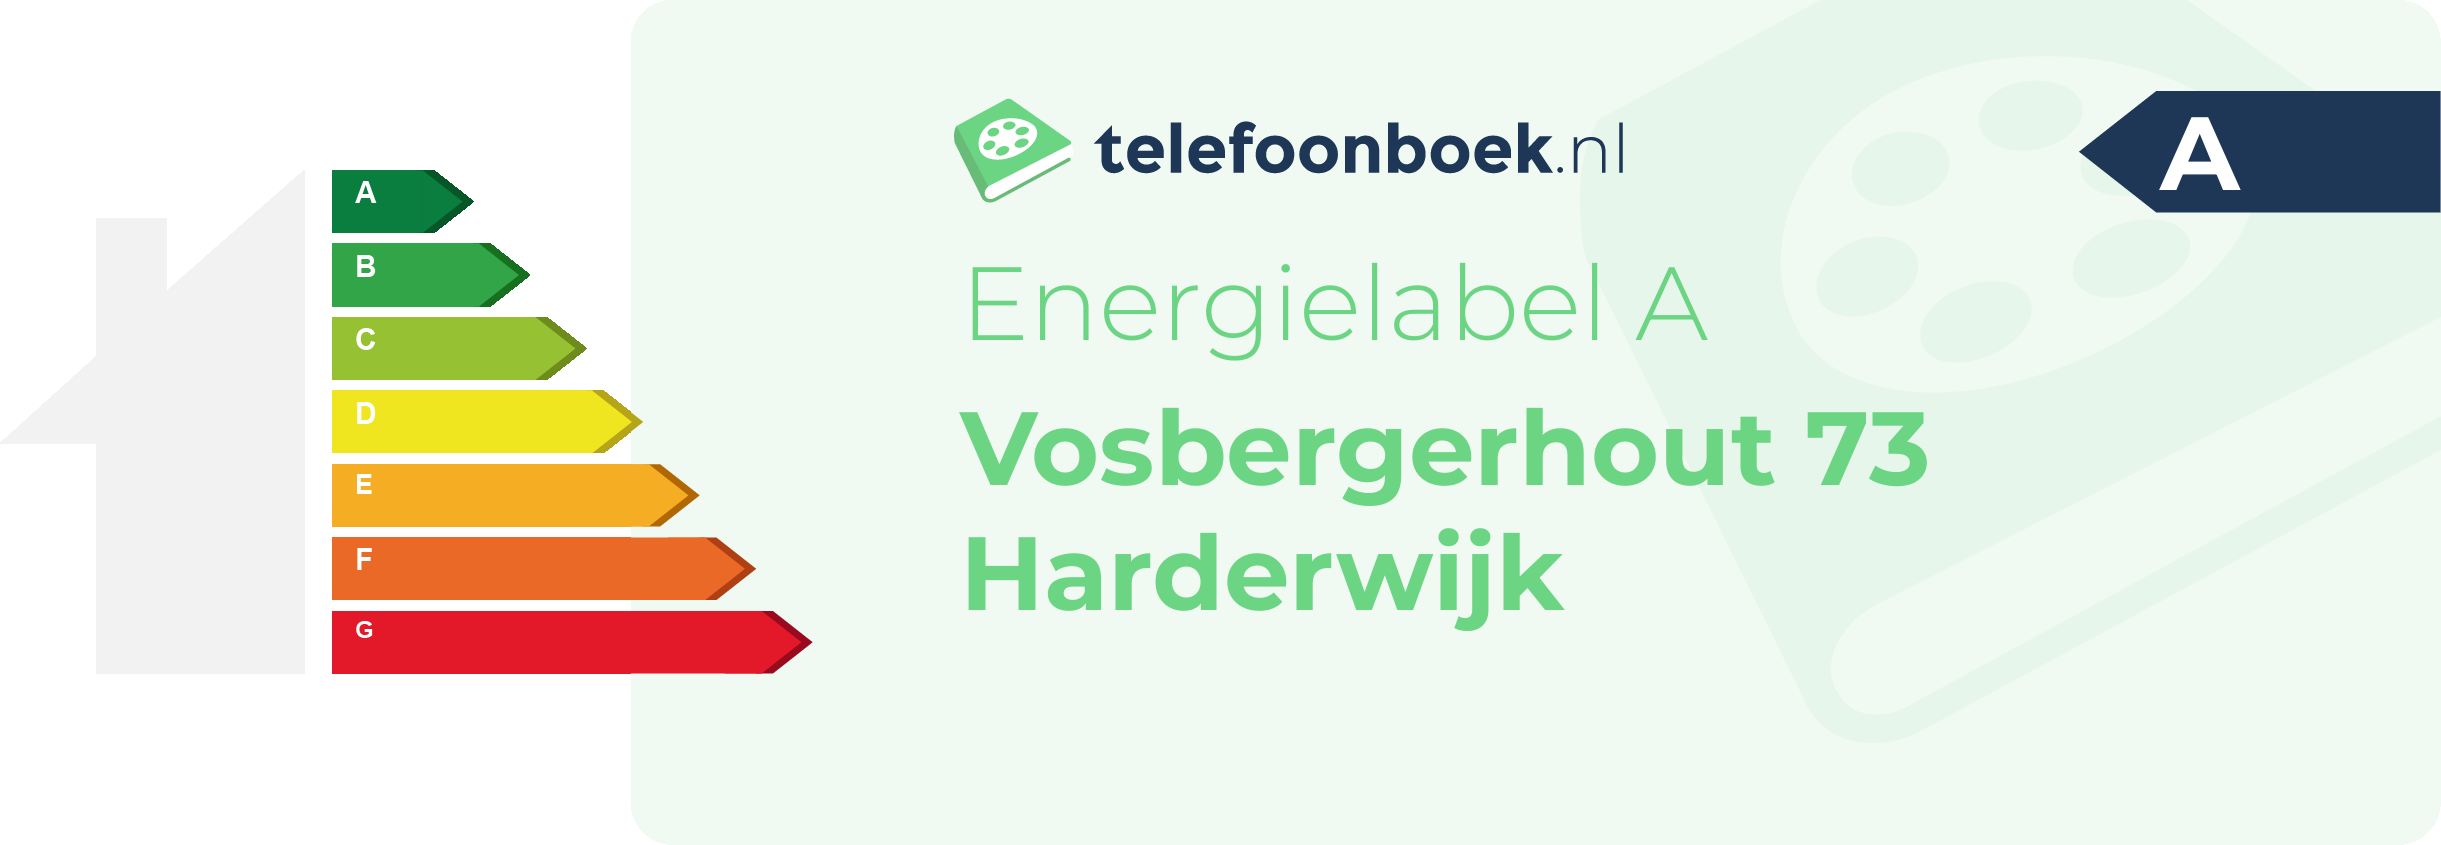 Energielabel Vosbergerhout 73 Harderwijk